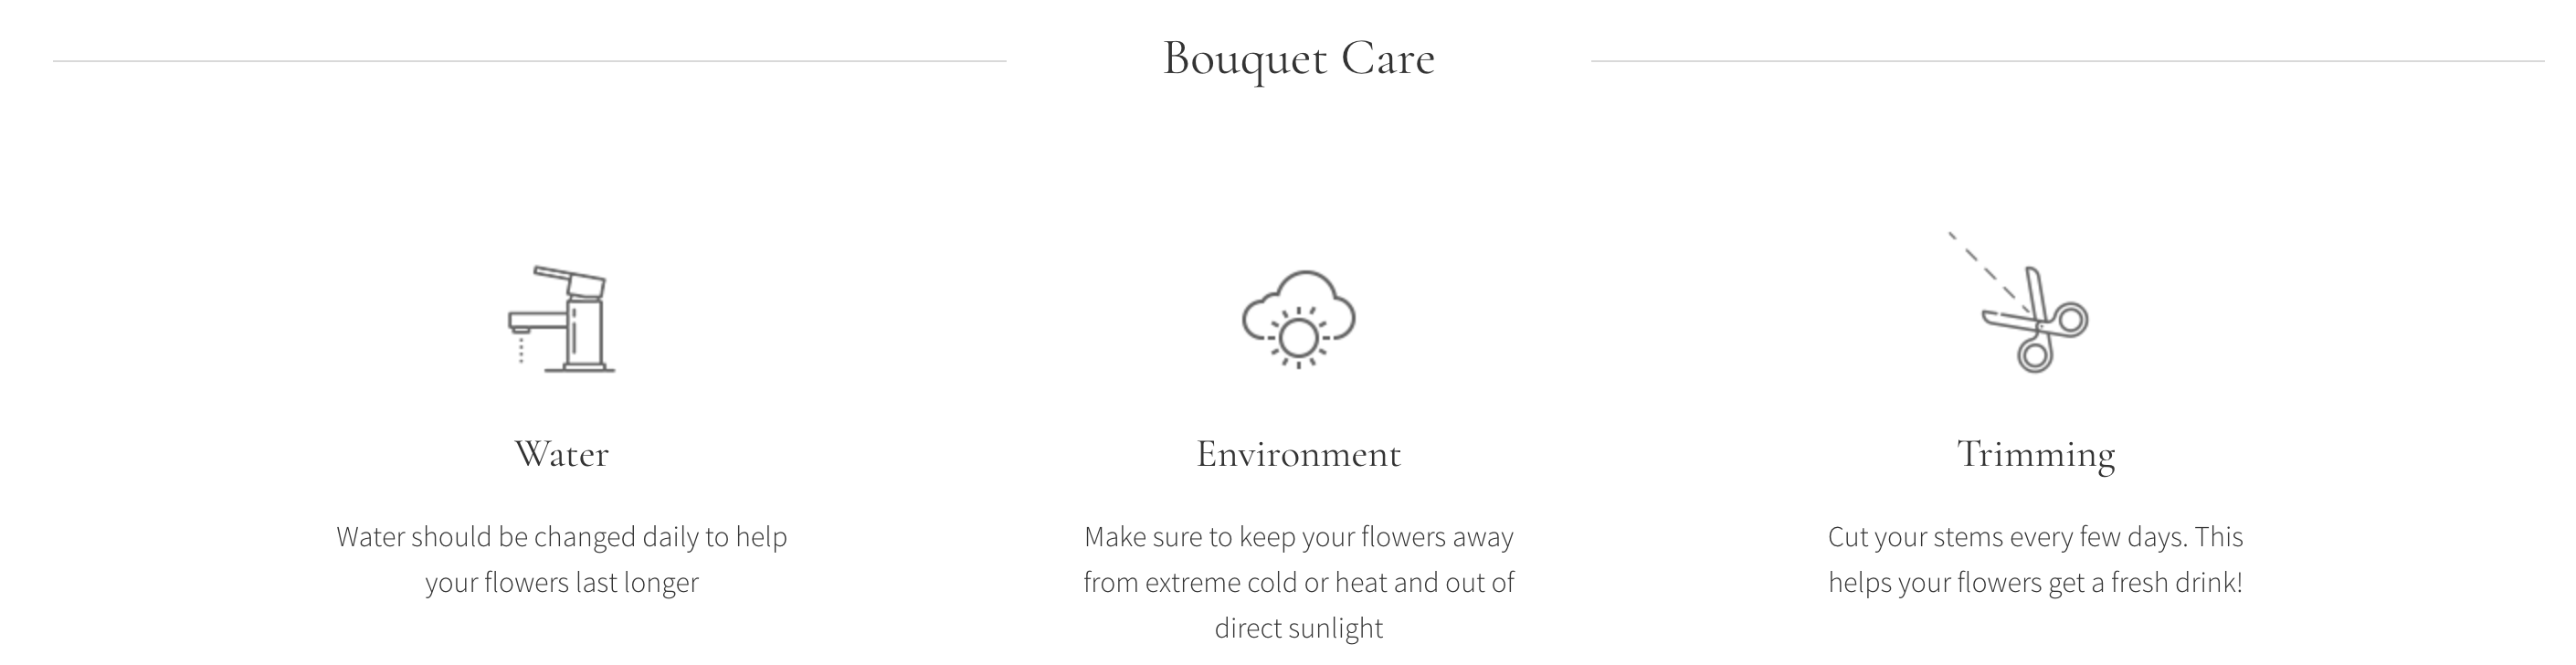 Bouquet Care, Milton Flower Delivery - Karen's Flower Shop.png